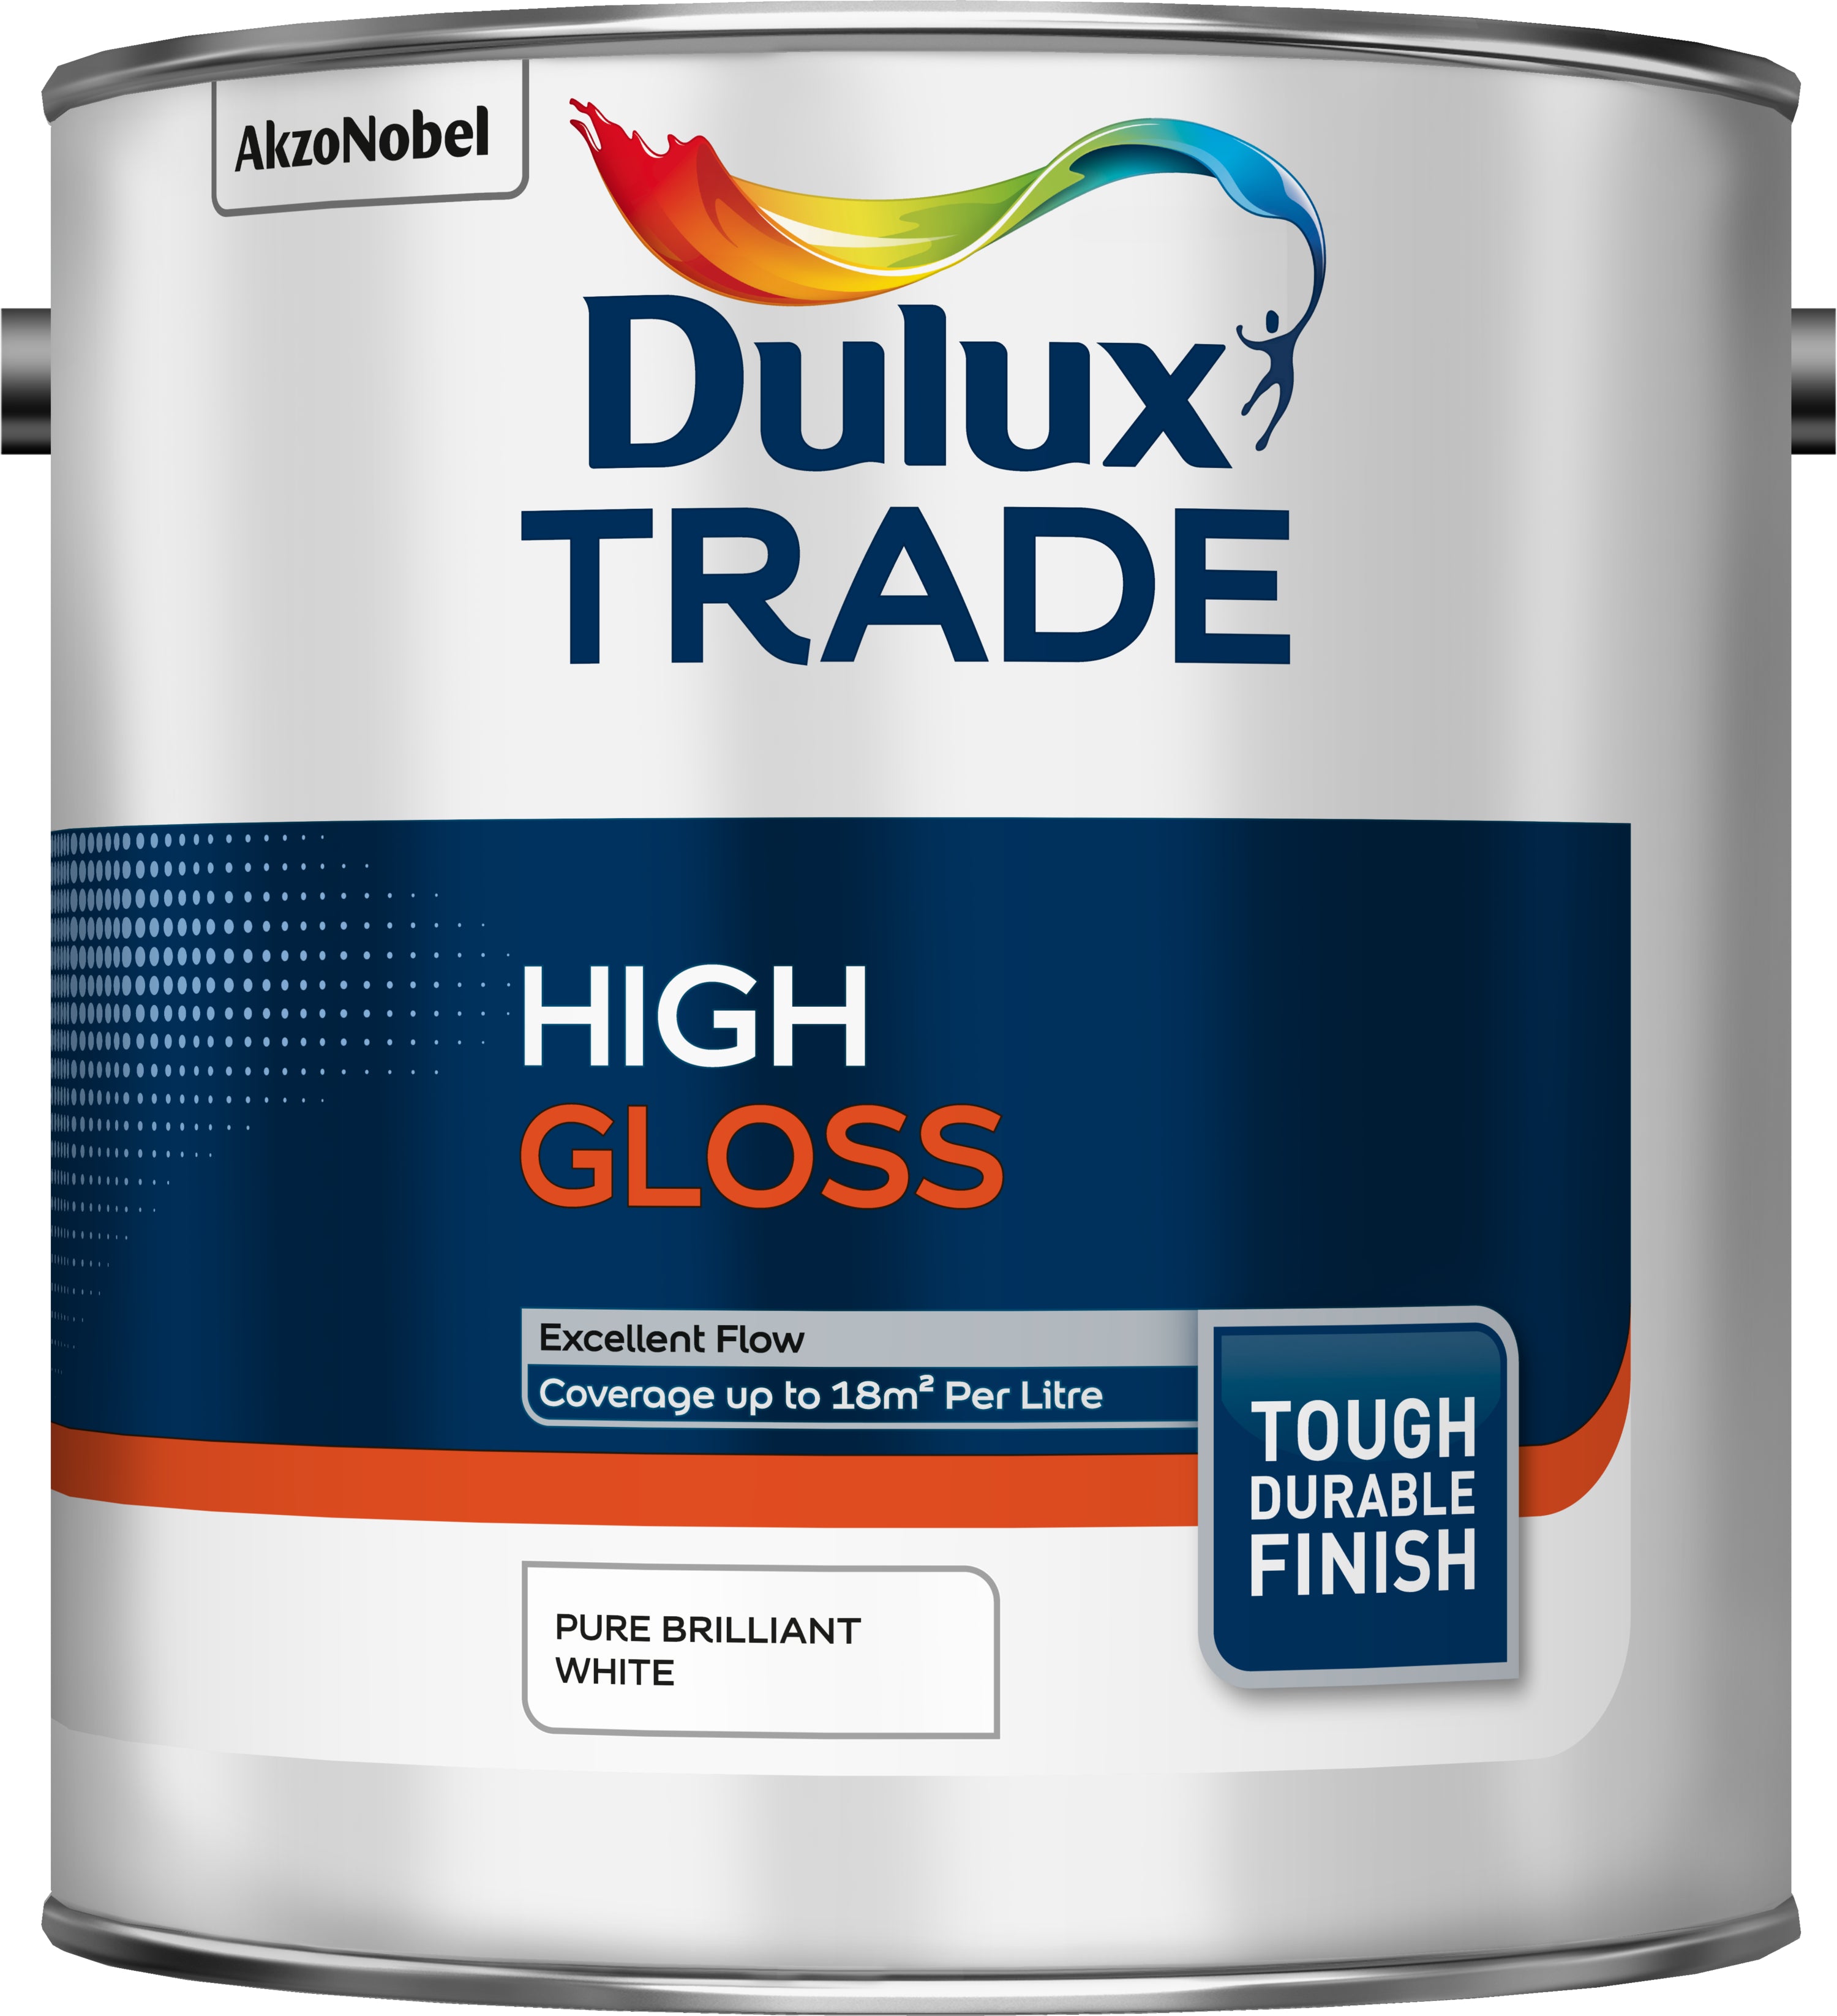 Dulux Trade High Gloss Pure Brilliant White 2.5L